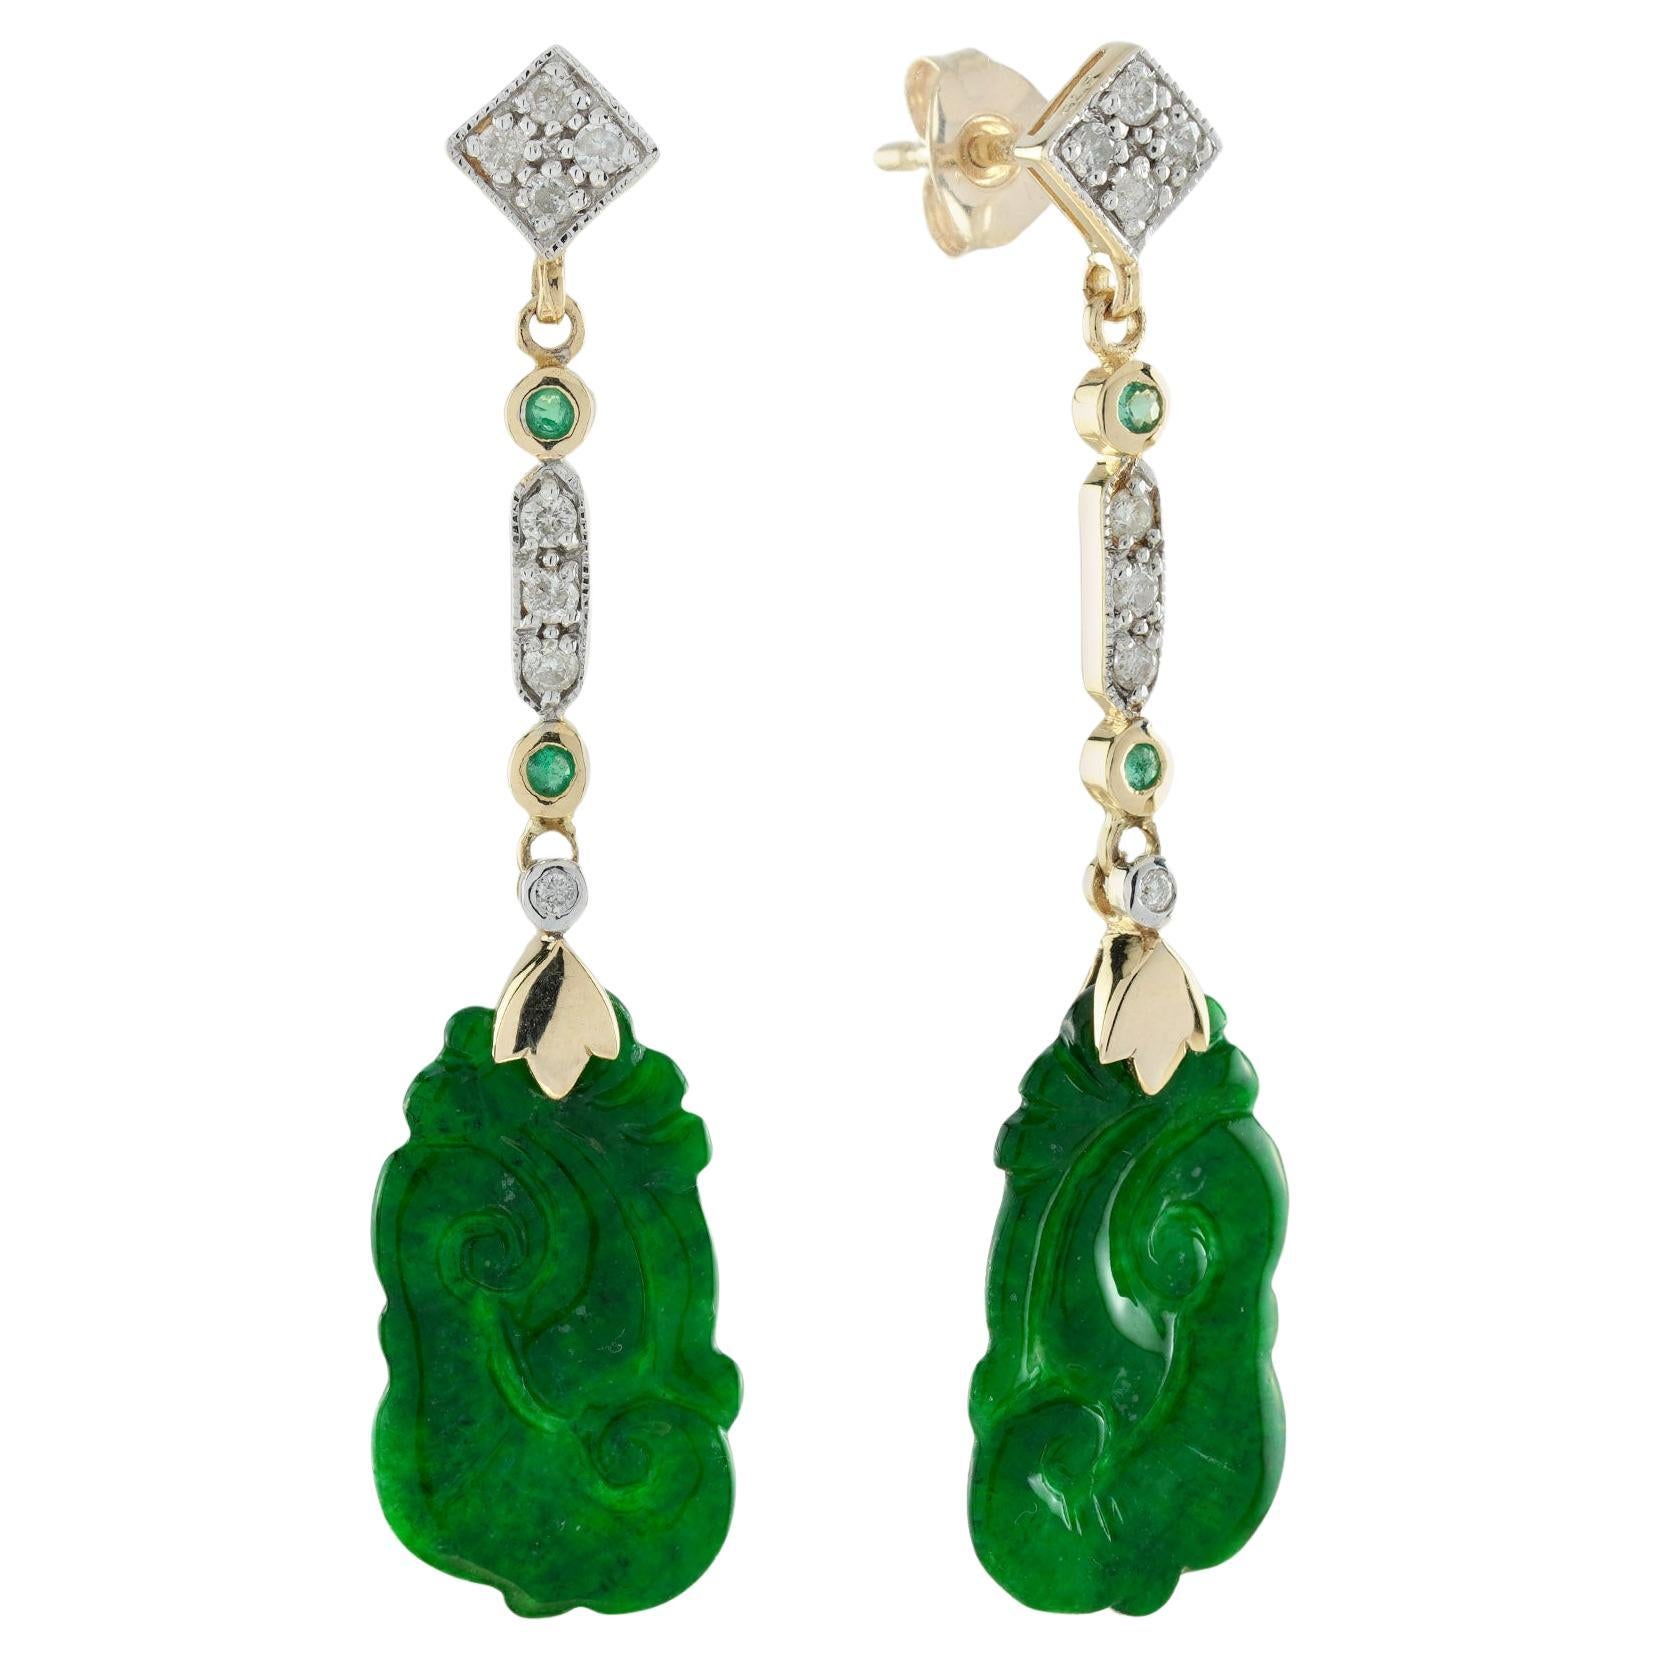 Pendants d'oreilles de style vintage en or jaune 9 carats avec jade sculpté, émeraude et diamants